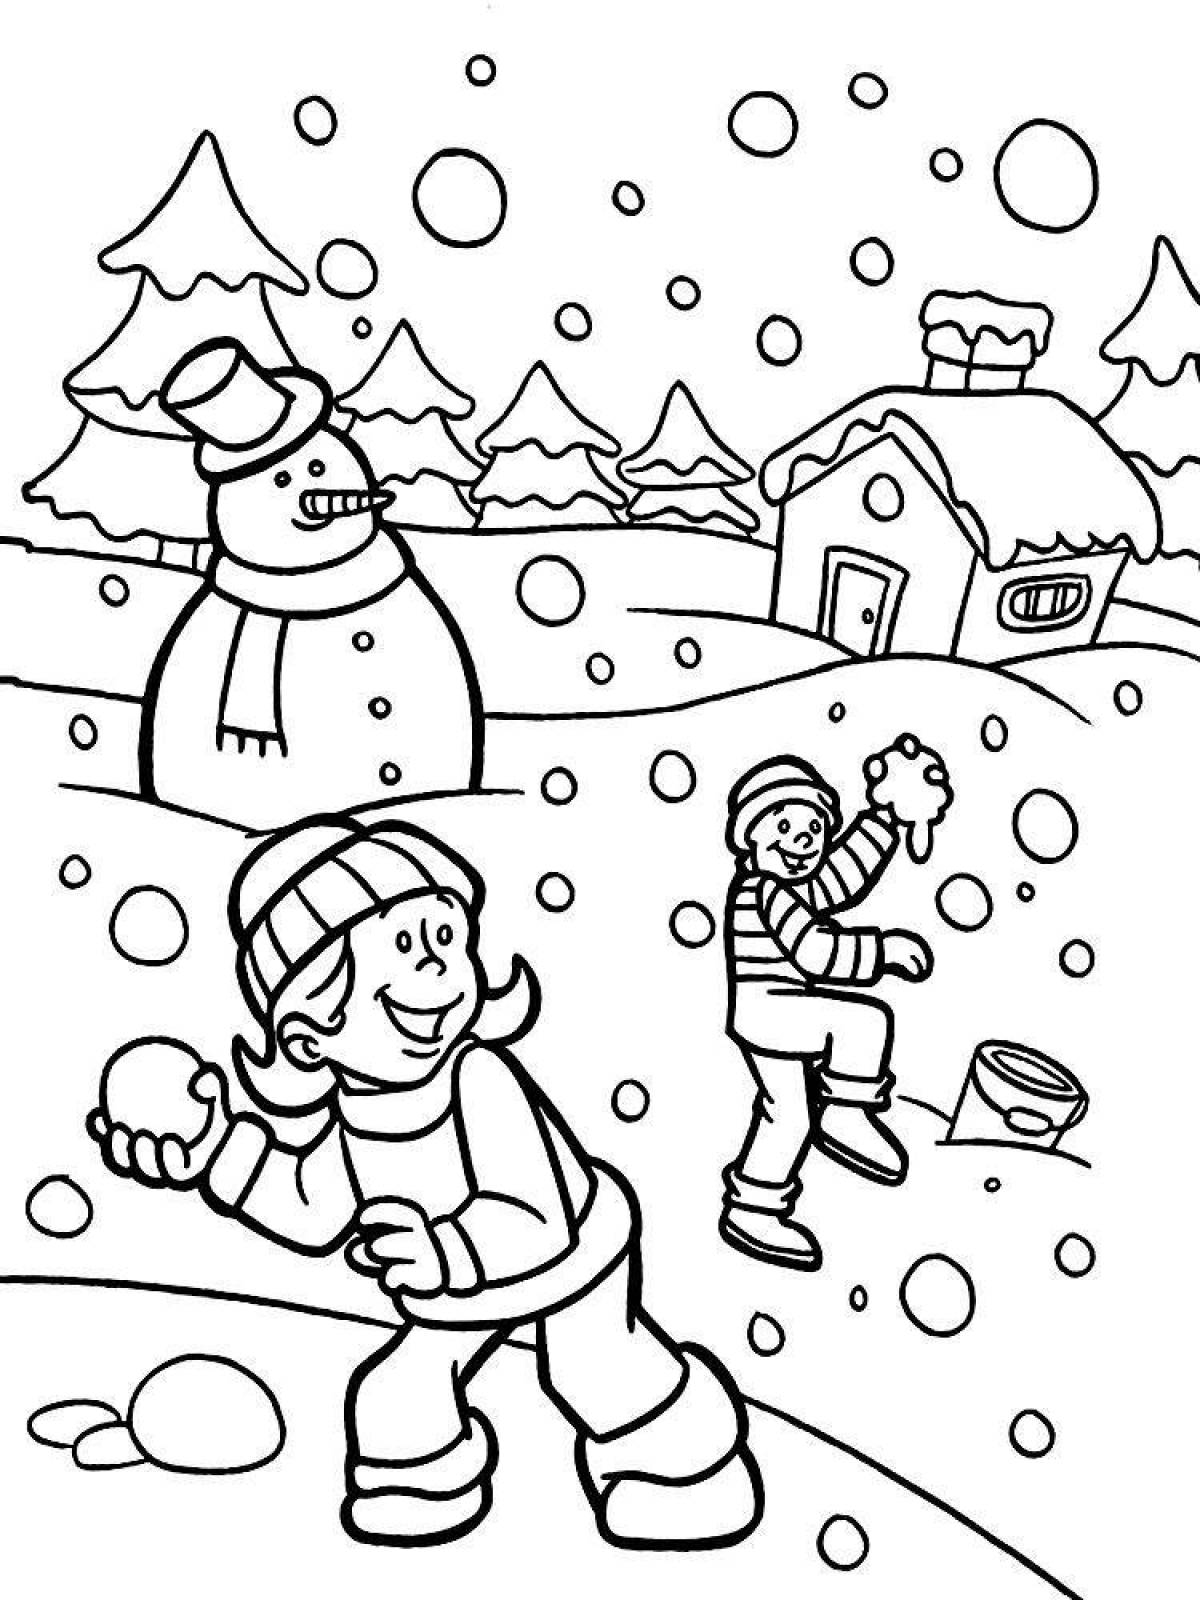 Радостная зимняя раскраска для детей 4-6 лет